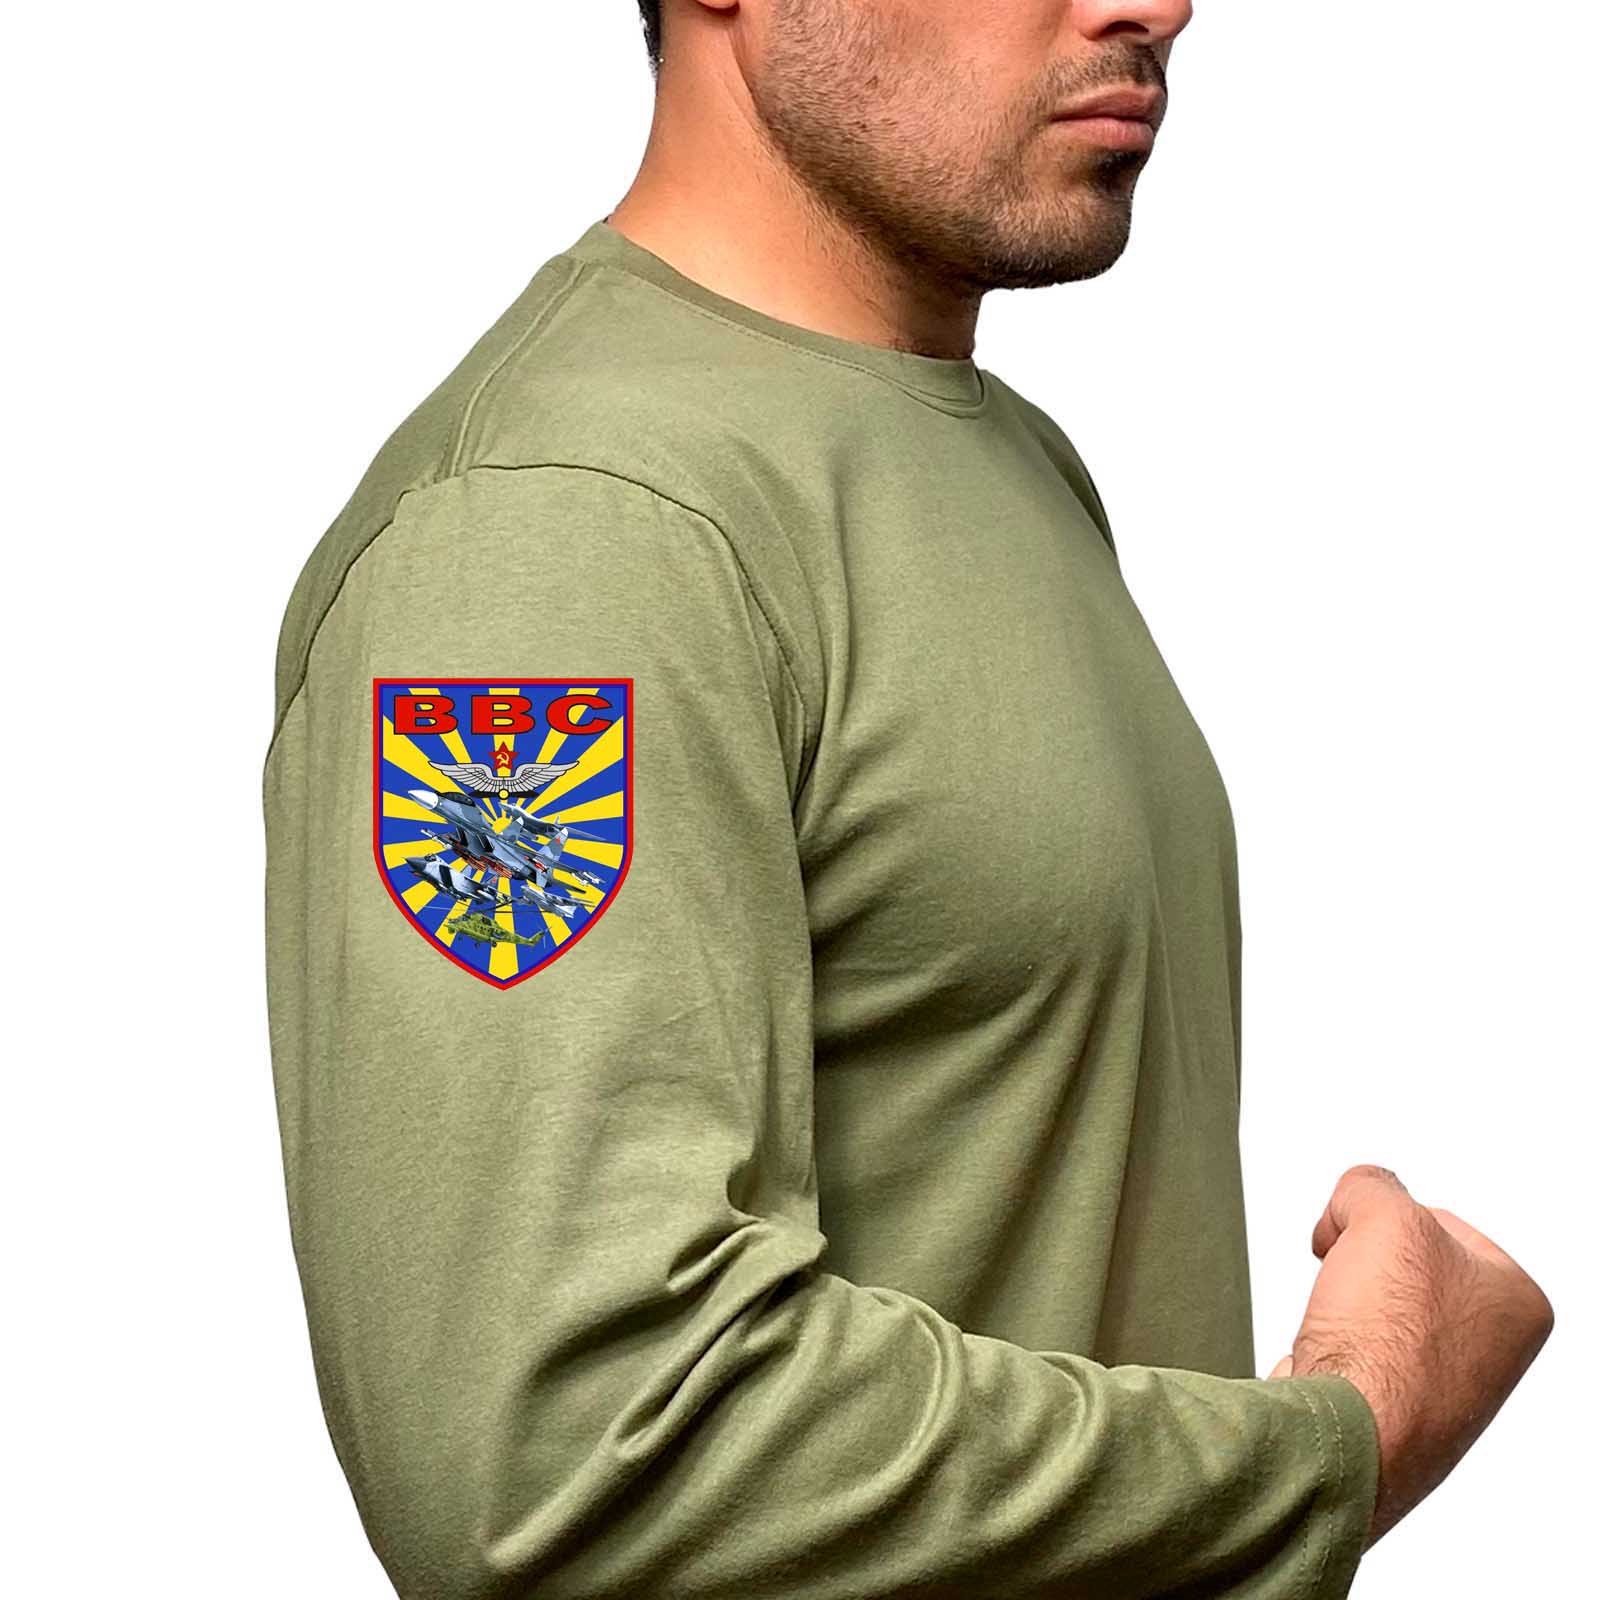 Купить футболку с длинным рукавом оливковую надежную с термоаппликацией ВВС выгодно